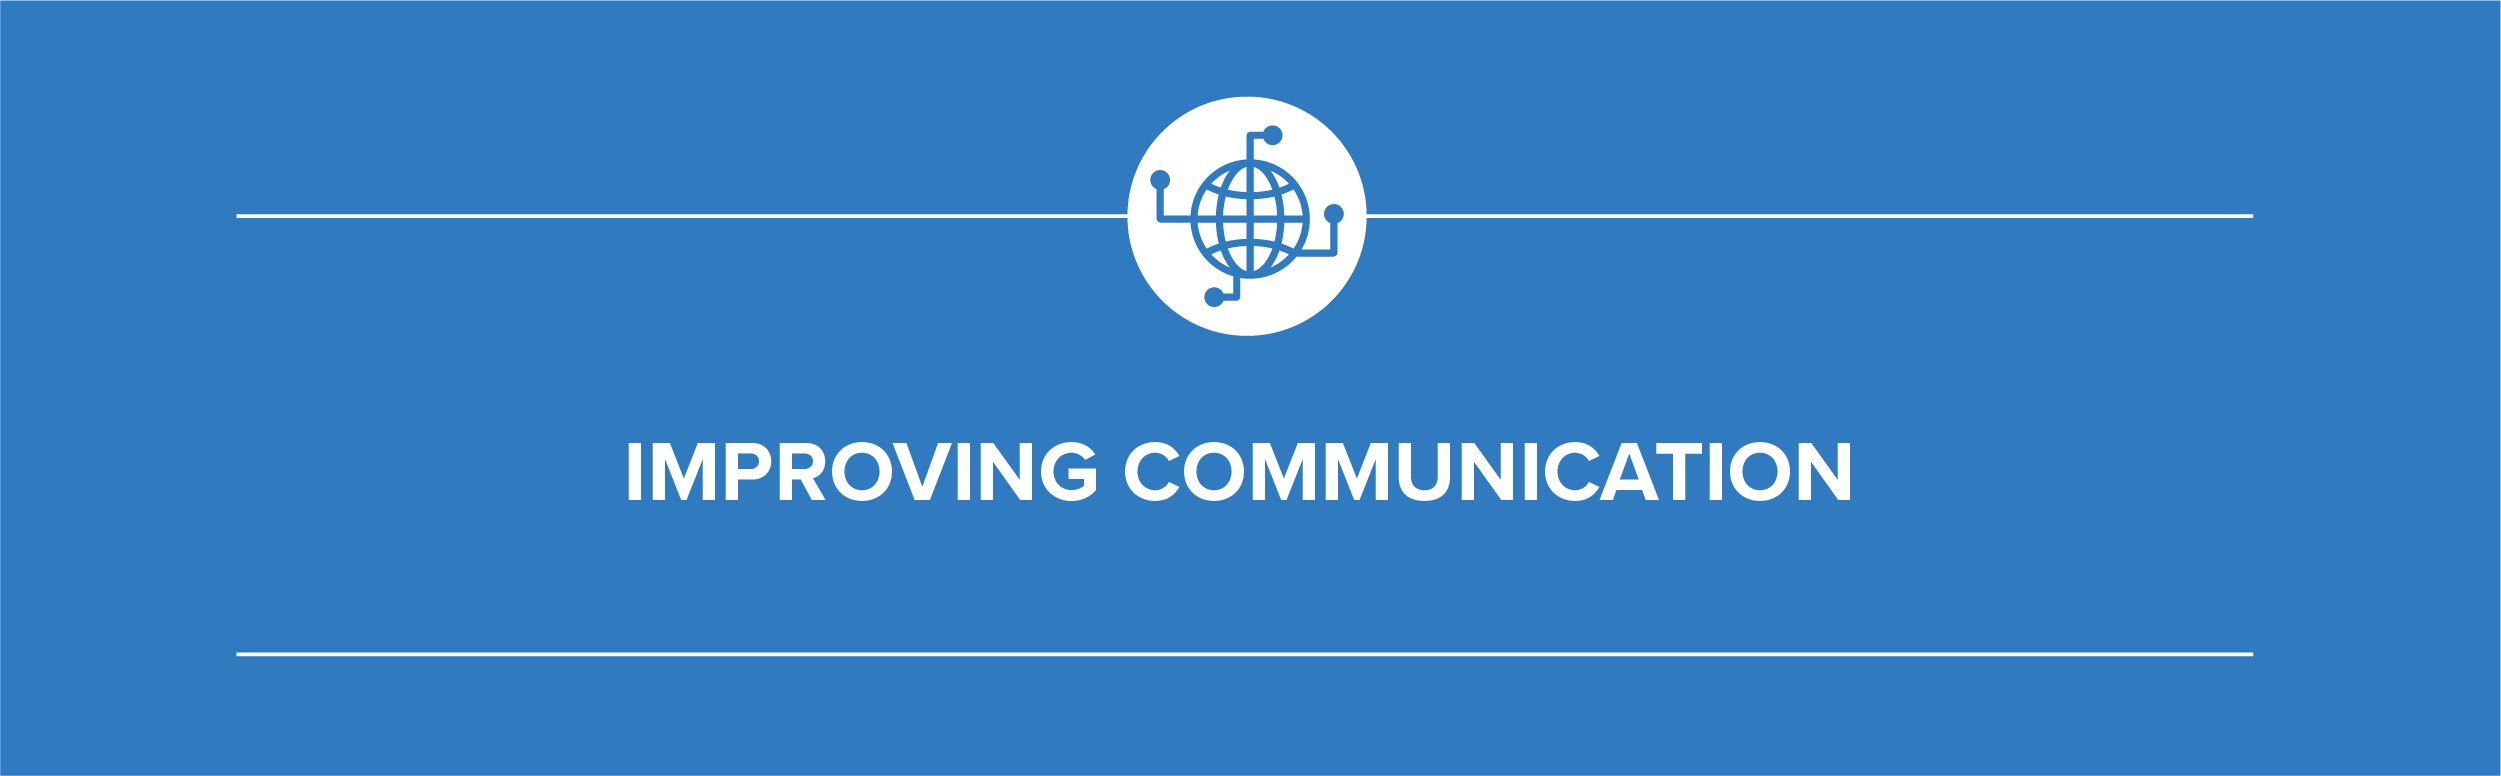 Blog_Improving_Communication